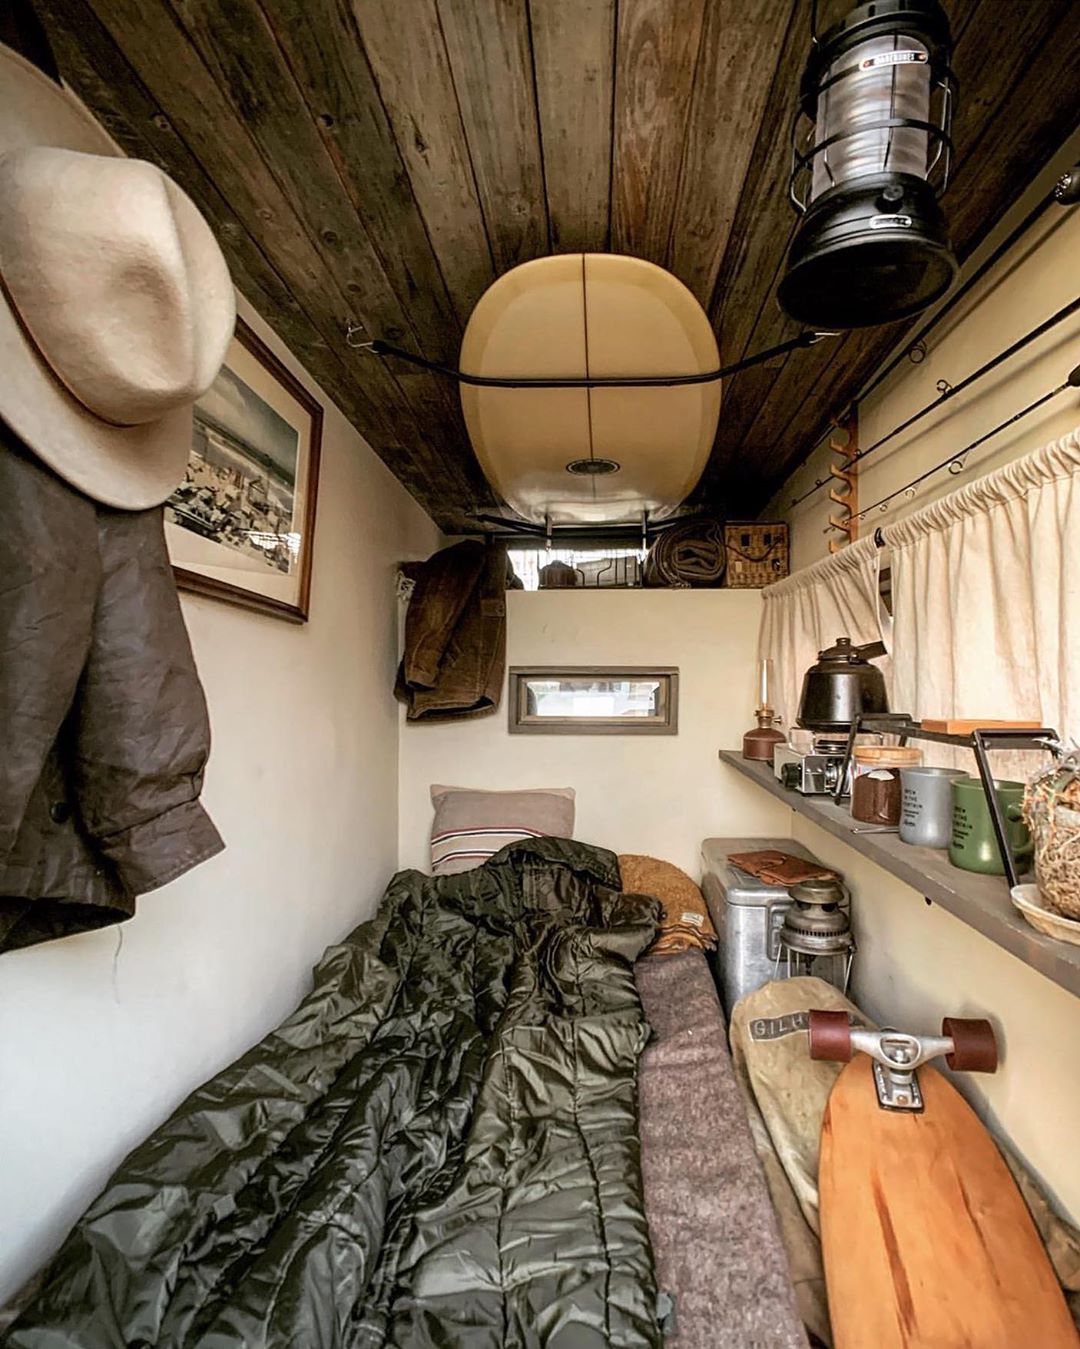 Camphack アウトドアライクな部屋のように見えるこちらは なんとトラックの荷台に設けられたリビングスペース 車に思い思いのカスタムを施して旅を楽しむカートラキャンパーが急増 Wacoca Japan People Life Style